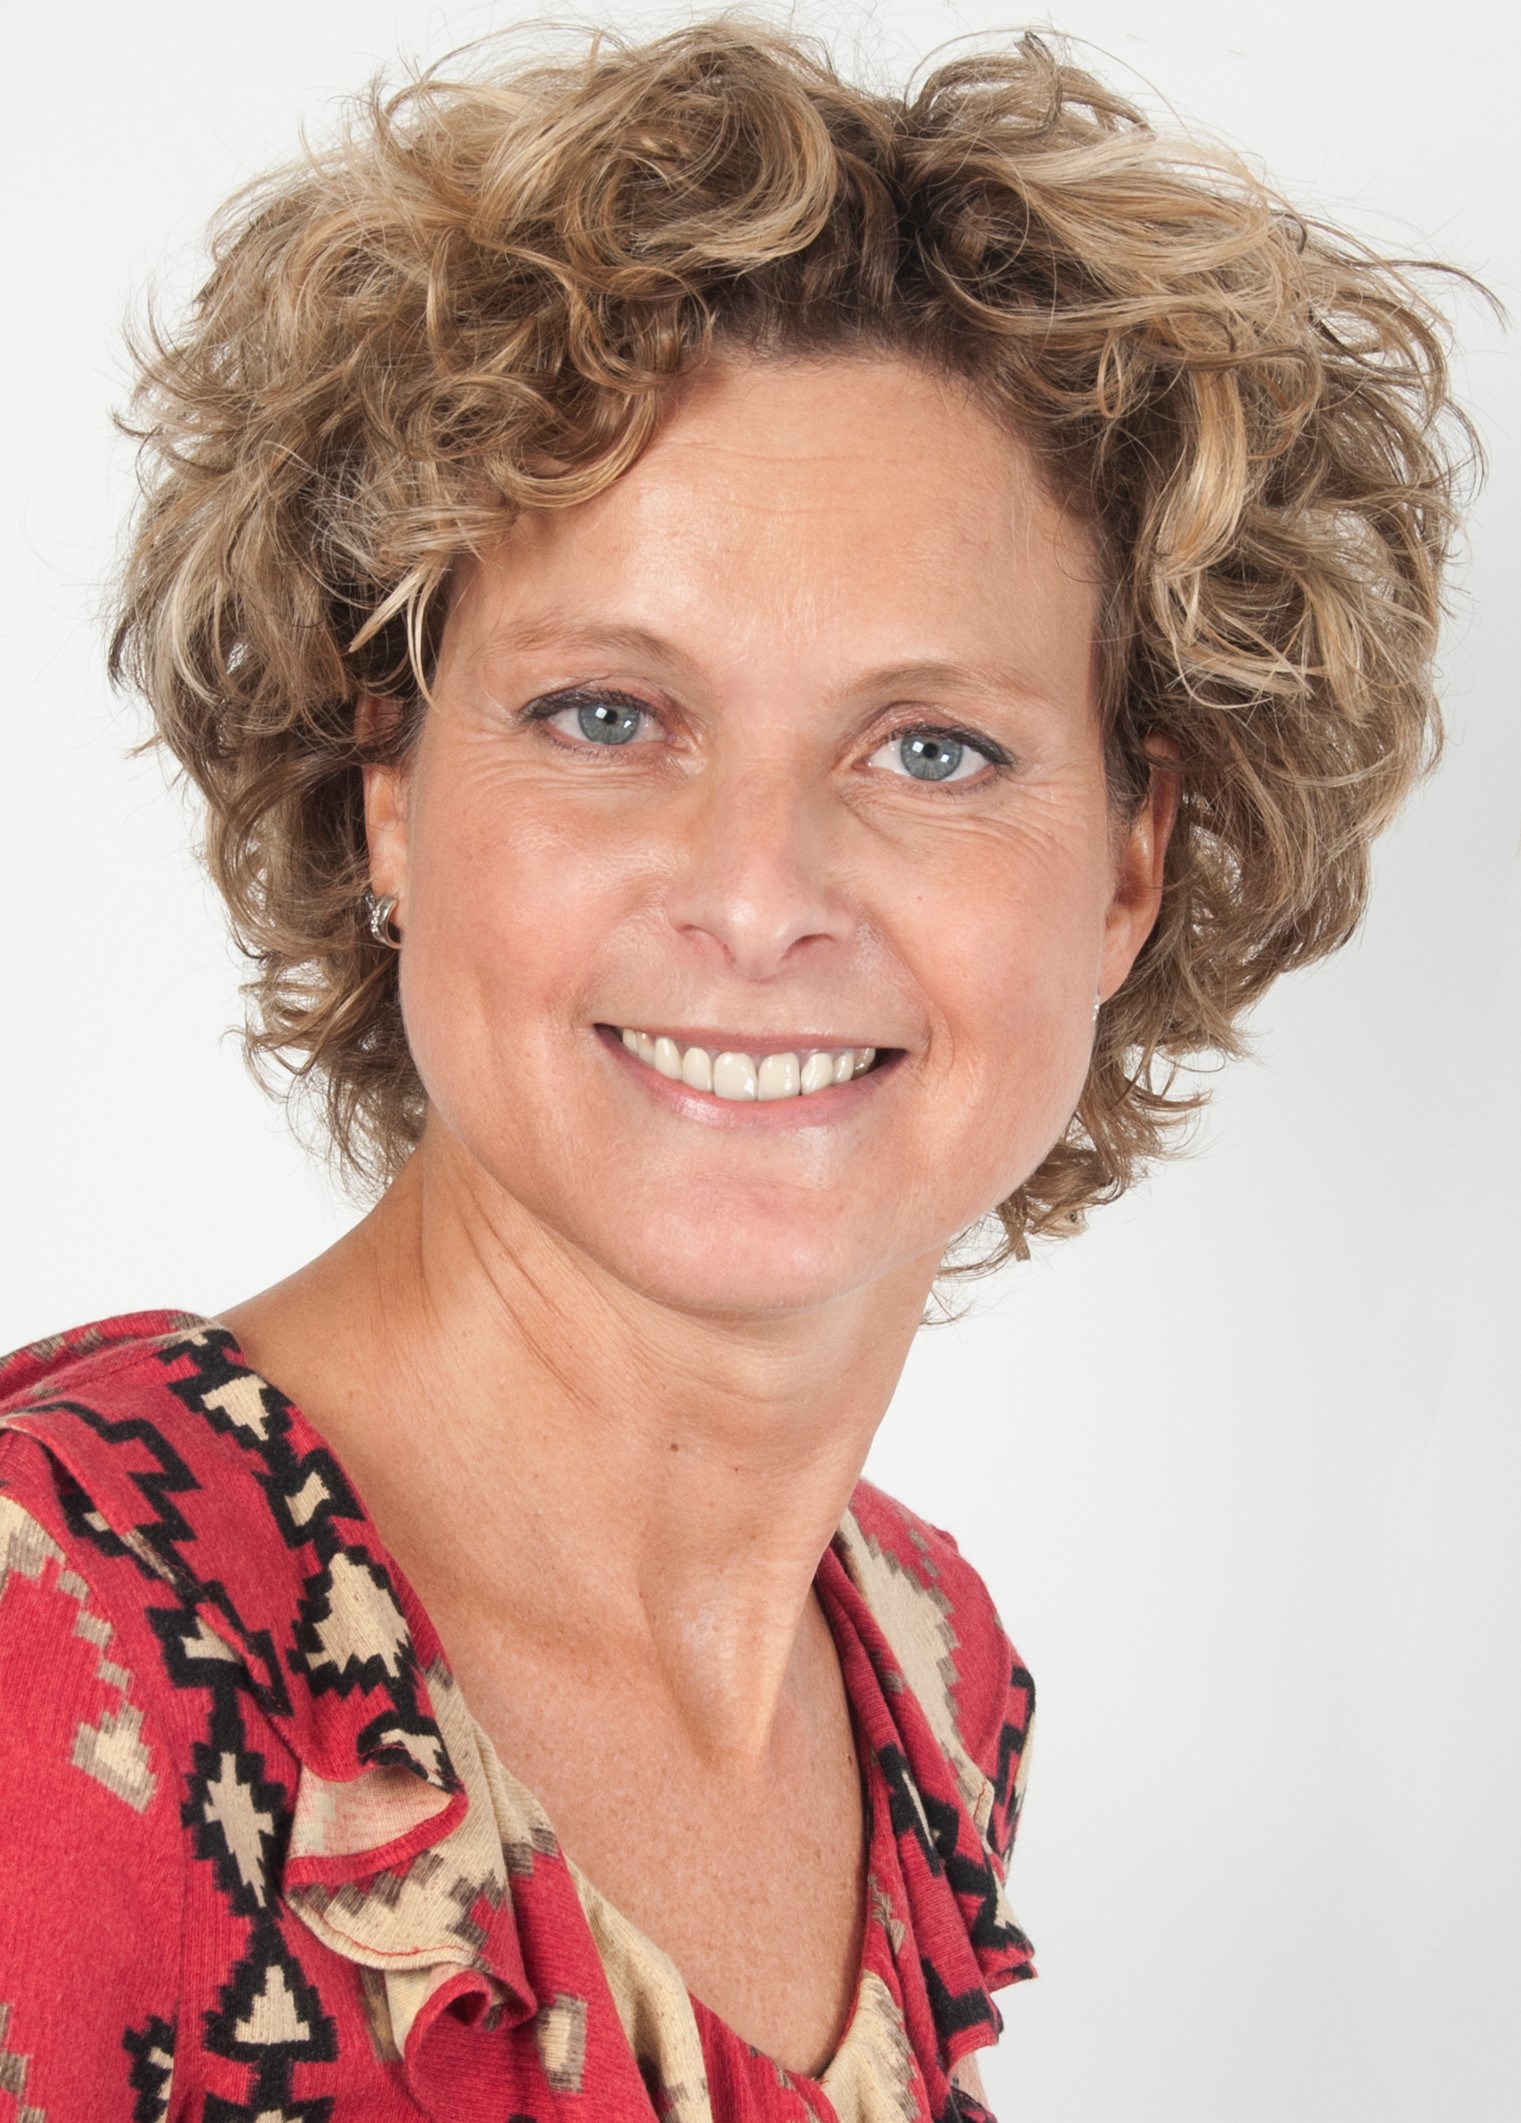 Hanneke van Oirsouw